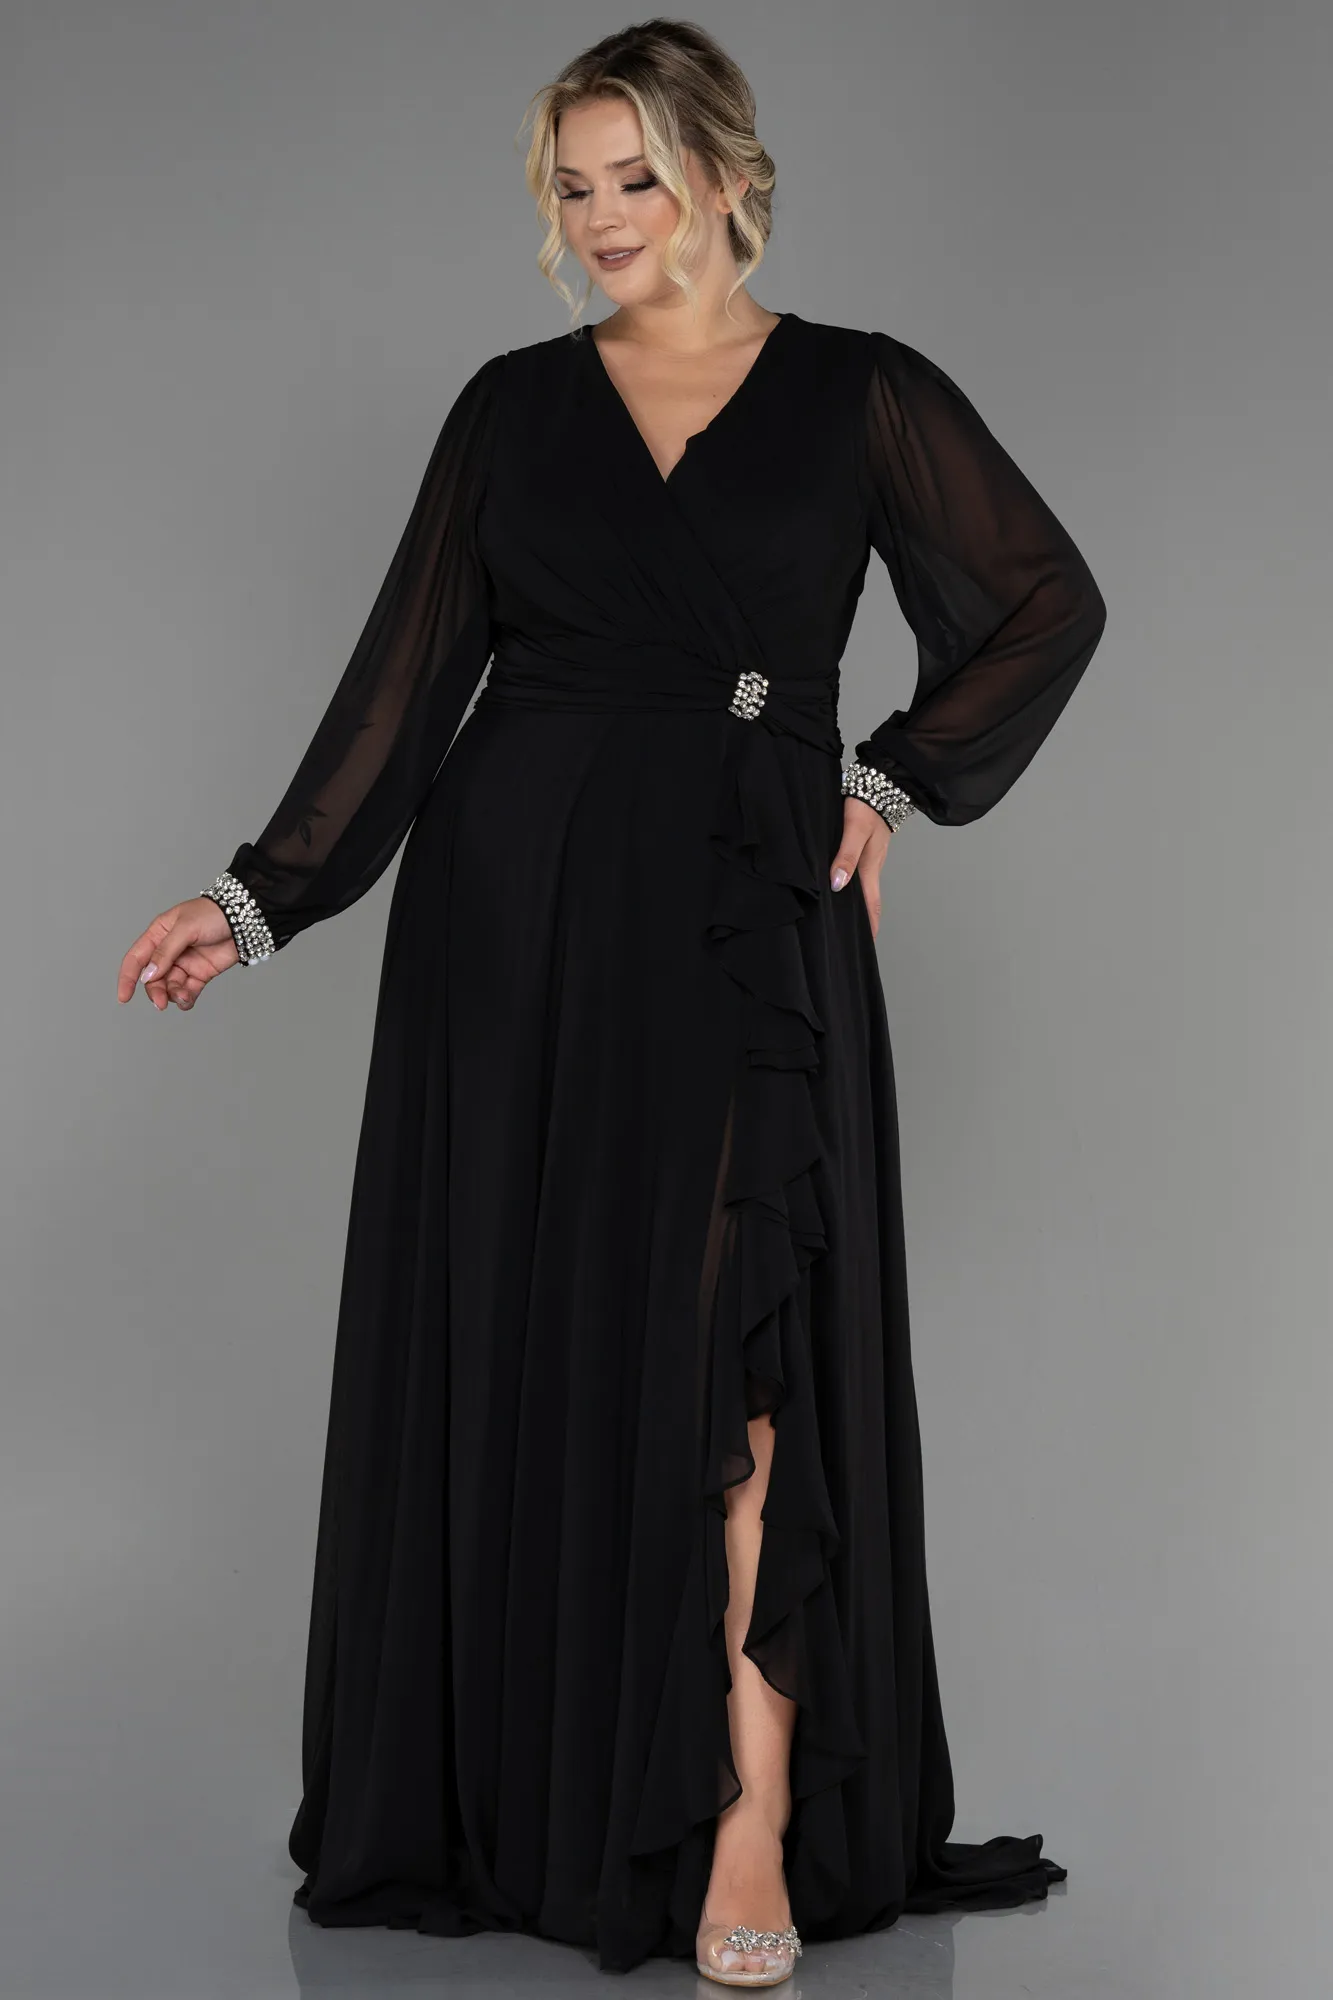 Black-Long Chiffon Plus Size Evening Dress ABU3222